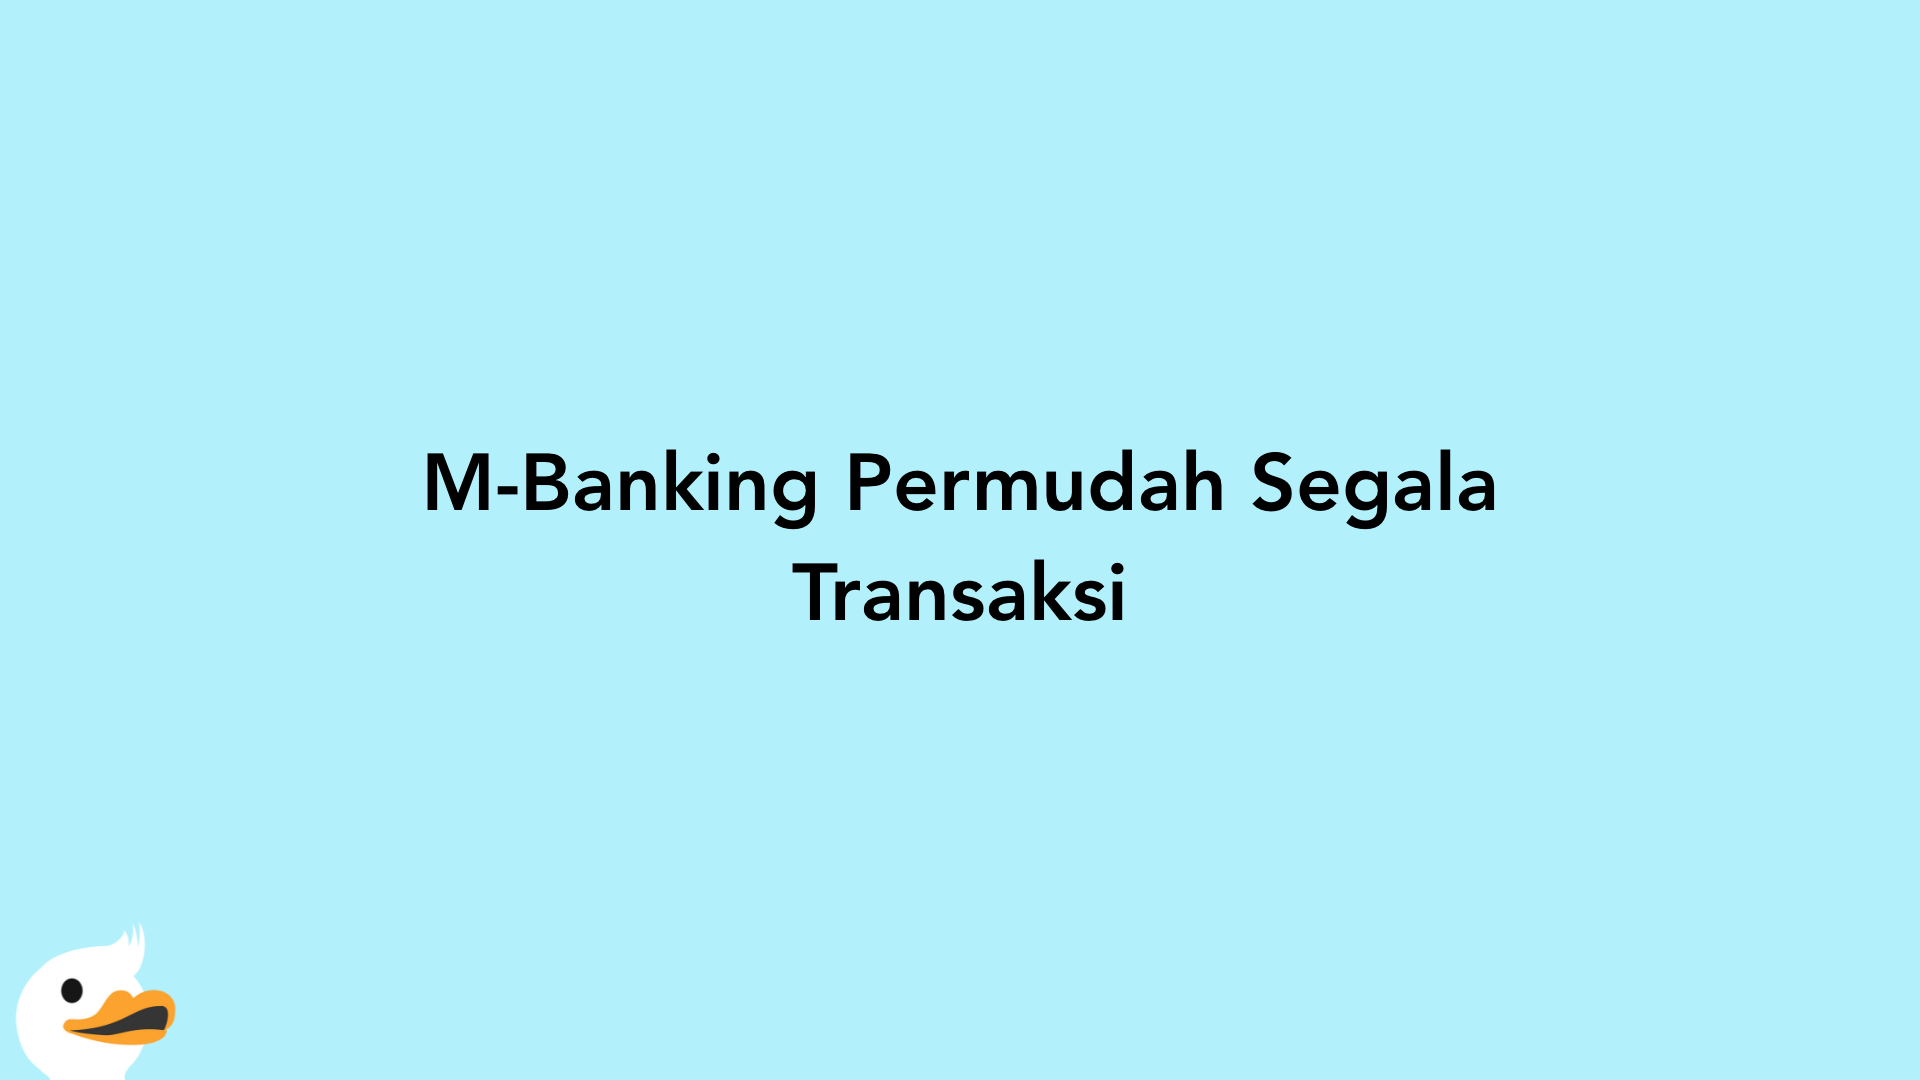 M-Banking Permudah Segala Transaksi